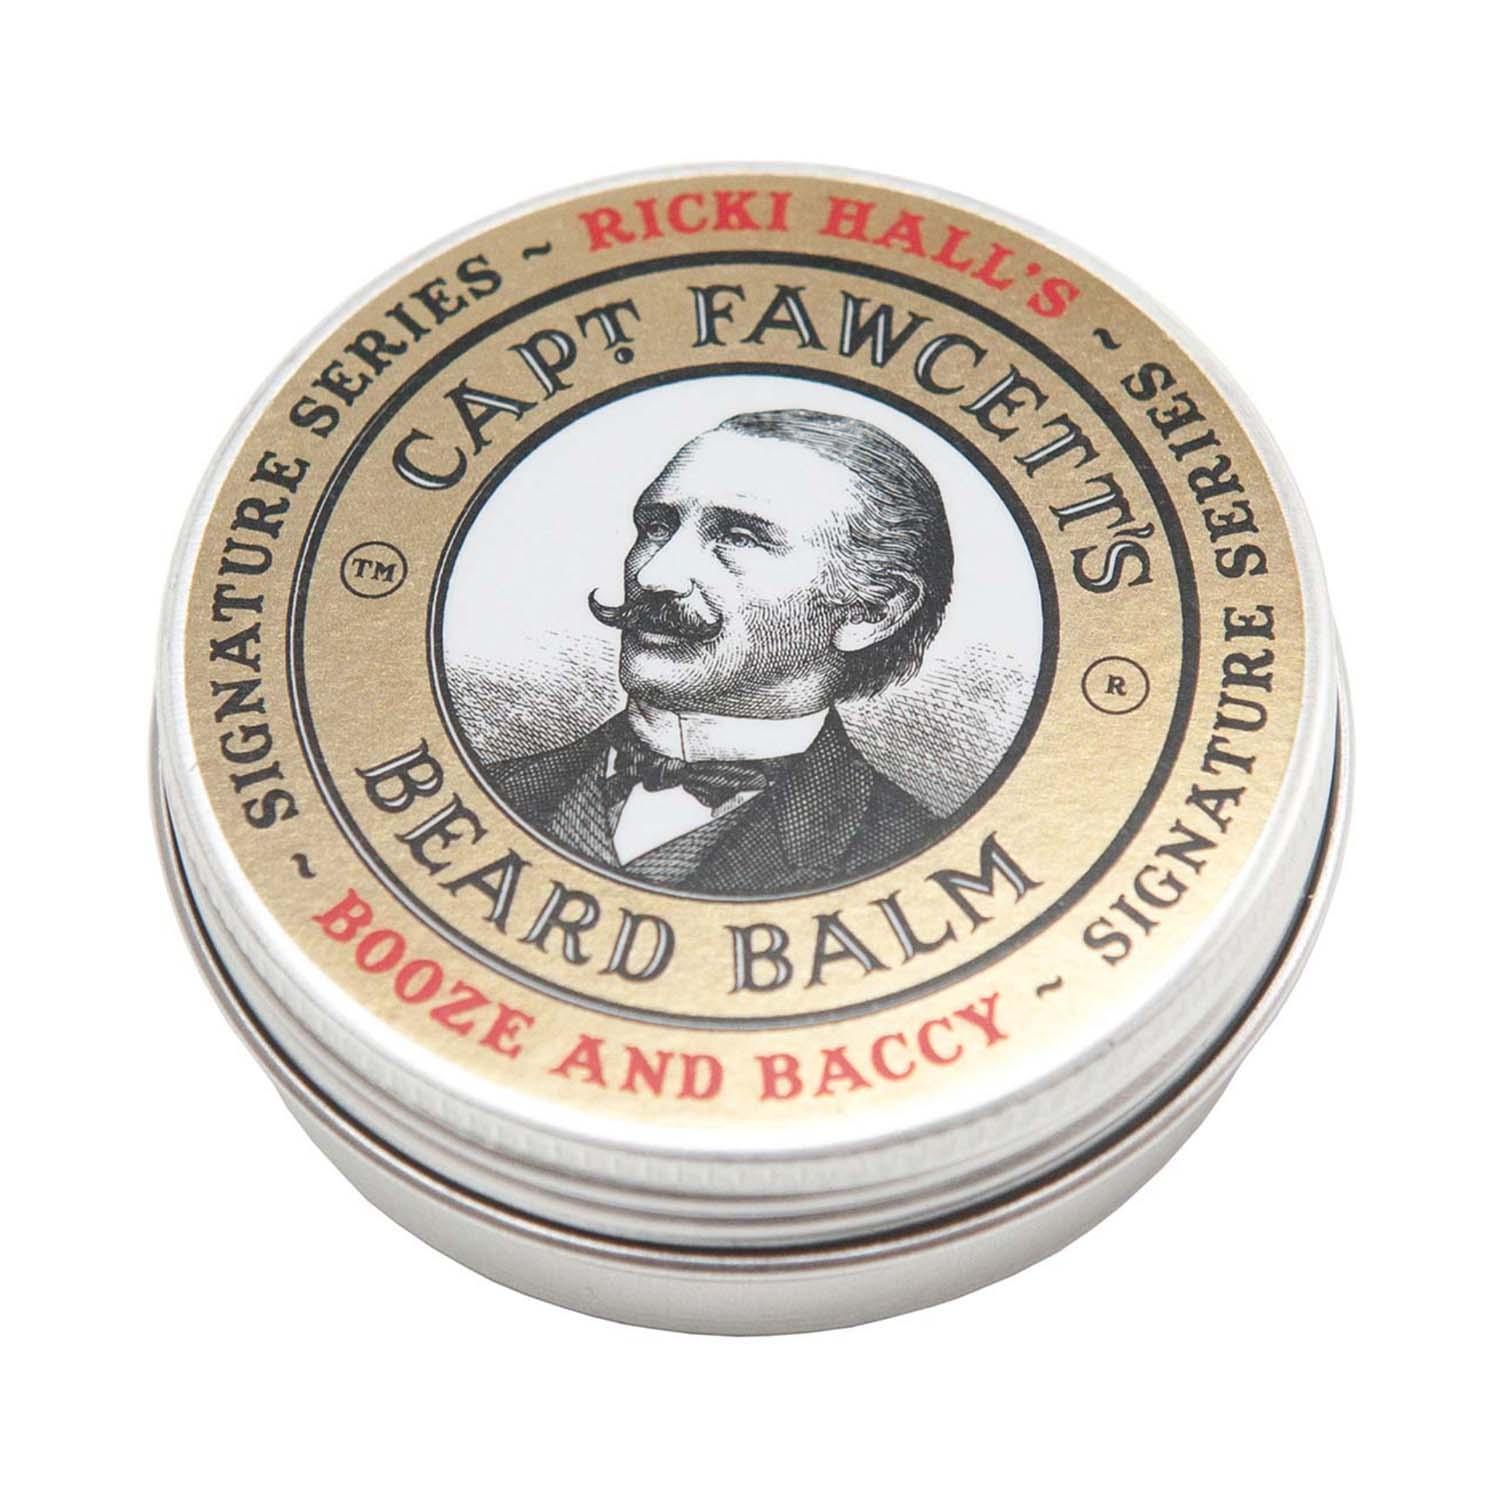 Captain Fawcett | Captain Fawcett Ricki Hall's Booze & Baccy Beard Balm (60 ml)